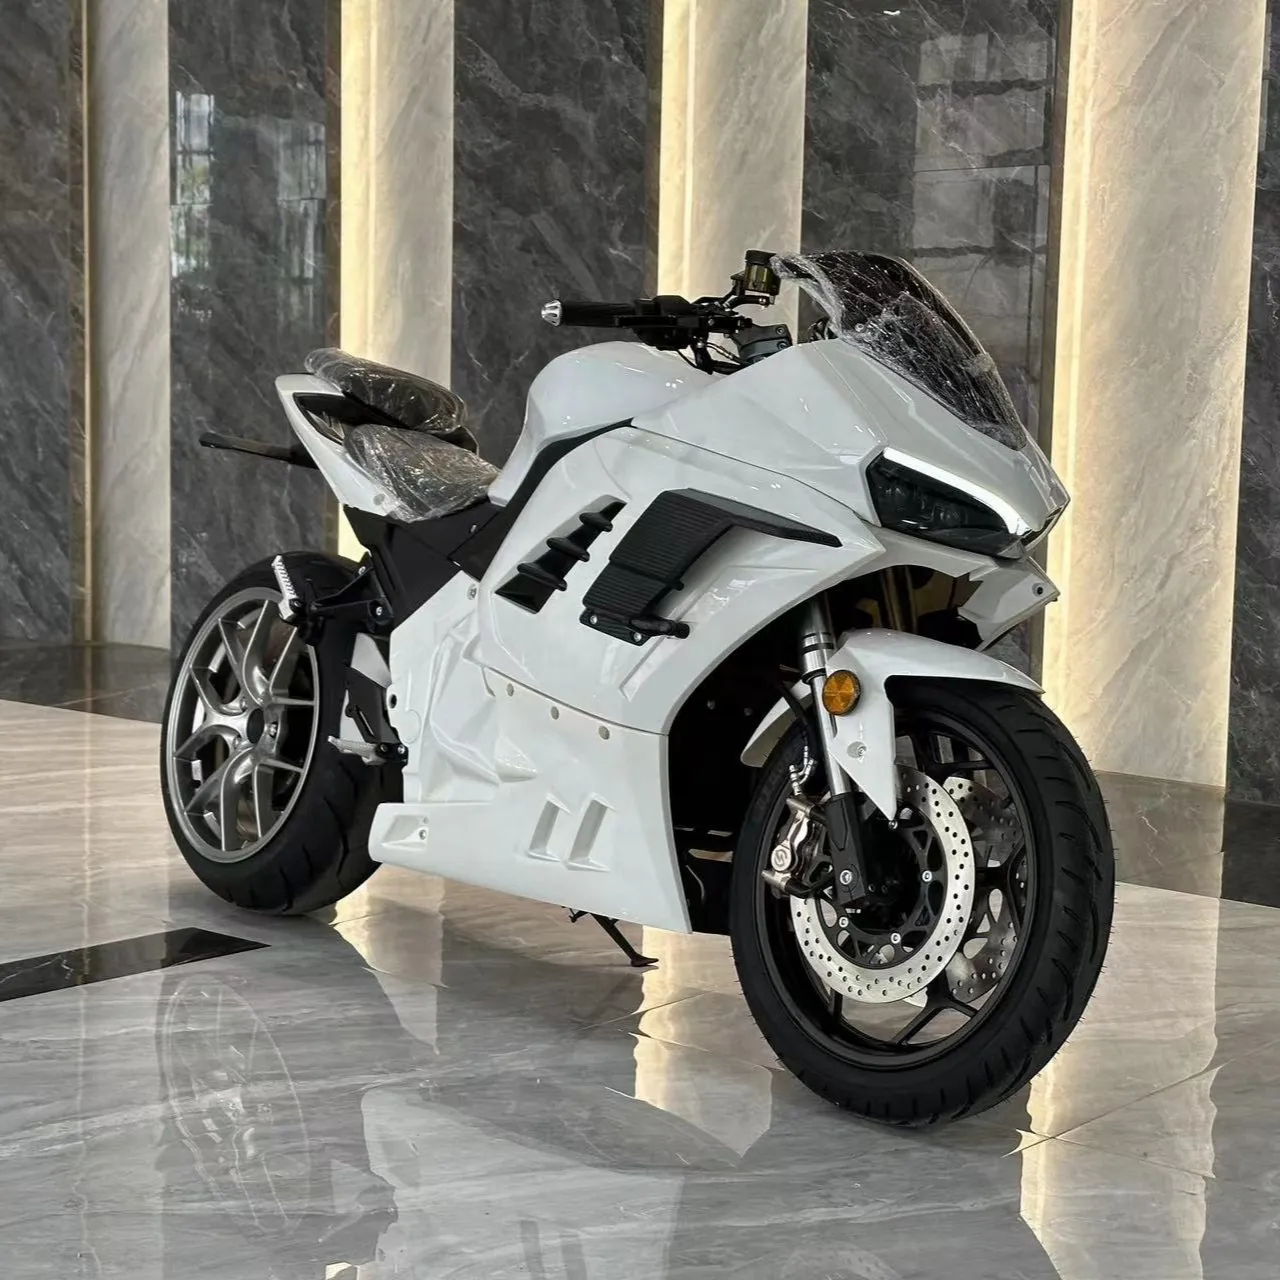 Heißer Verkauf hoher Qualität 8000w Mittelmotor Geschwindigkeit 150 km/h Rennen Elektromotor rad Single Swing Arm Motorrad